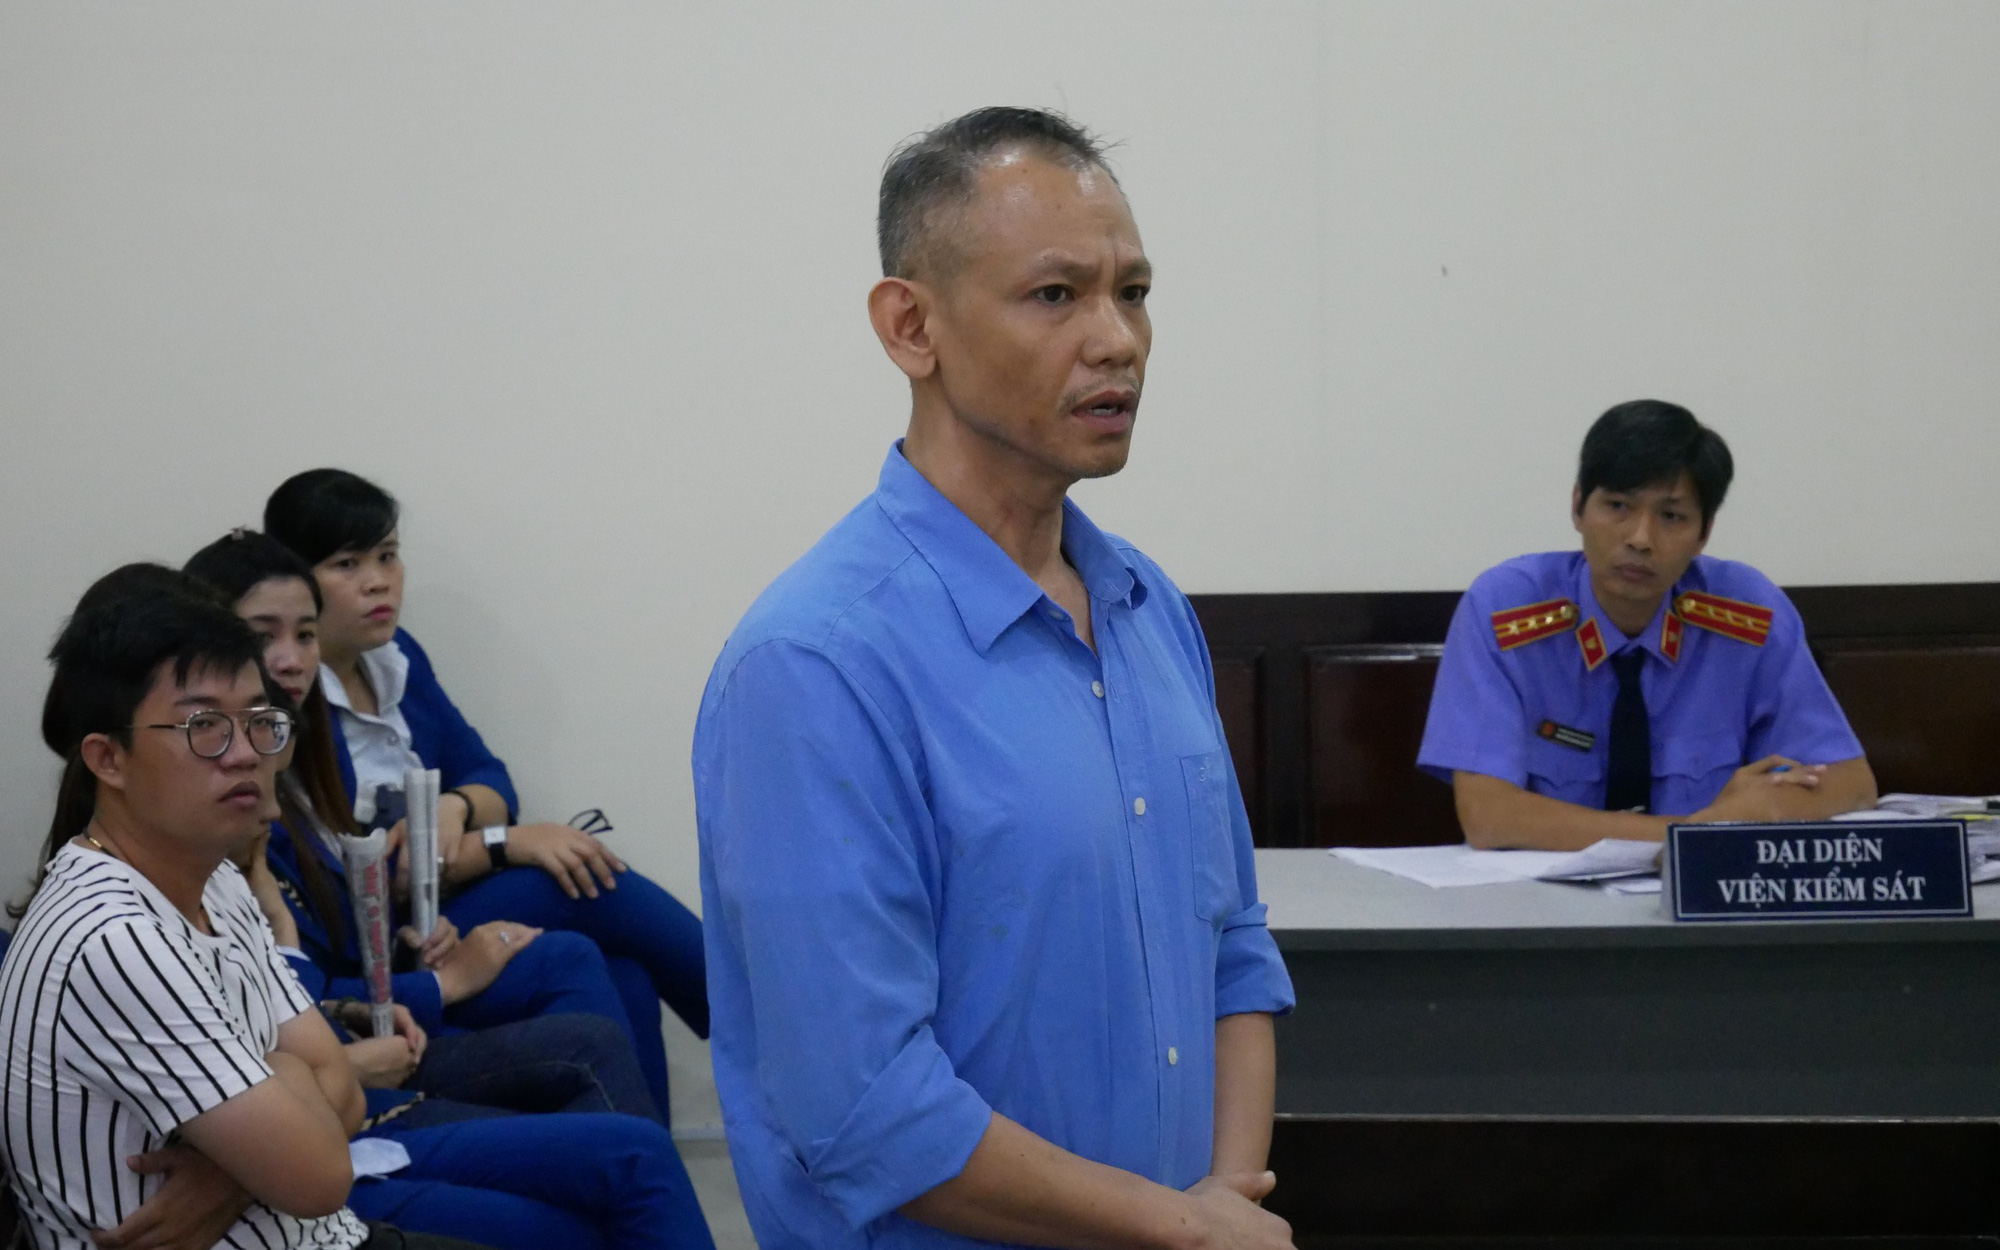 Ngã vào... mông và vùng kín em vợ Việt kiều, gã anh rể lãnh án 9 tháng tù về tội hiếp dâm